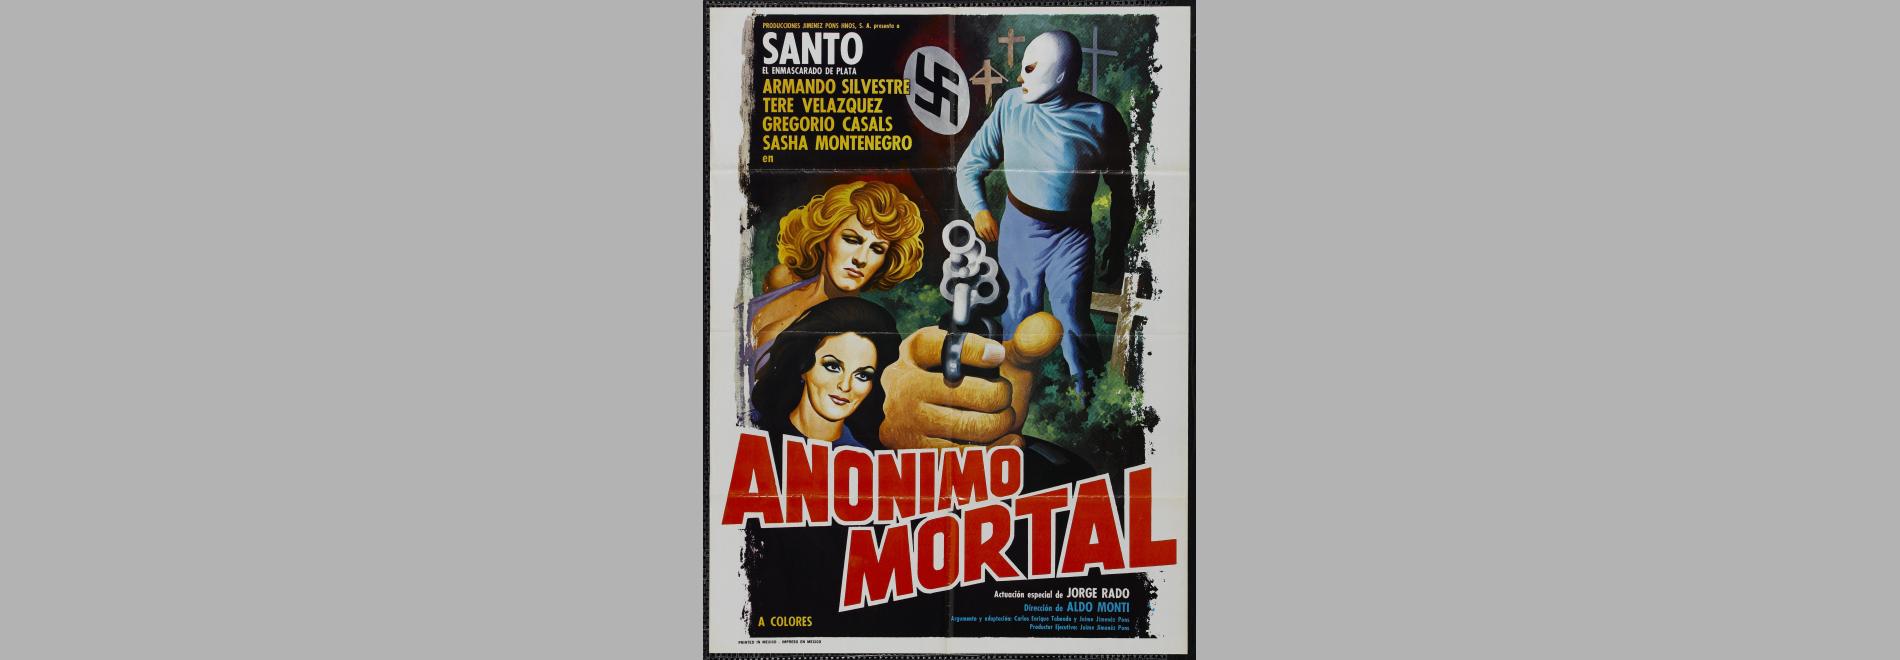 Anónimo mortal (Aldo Monti, 1972)